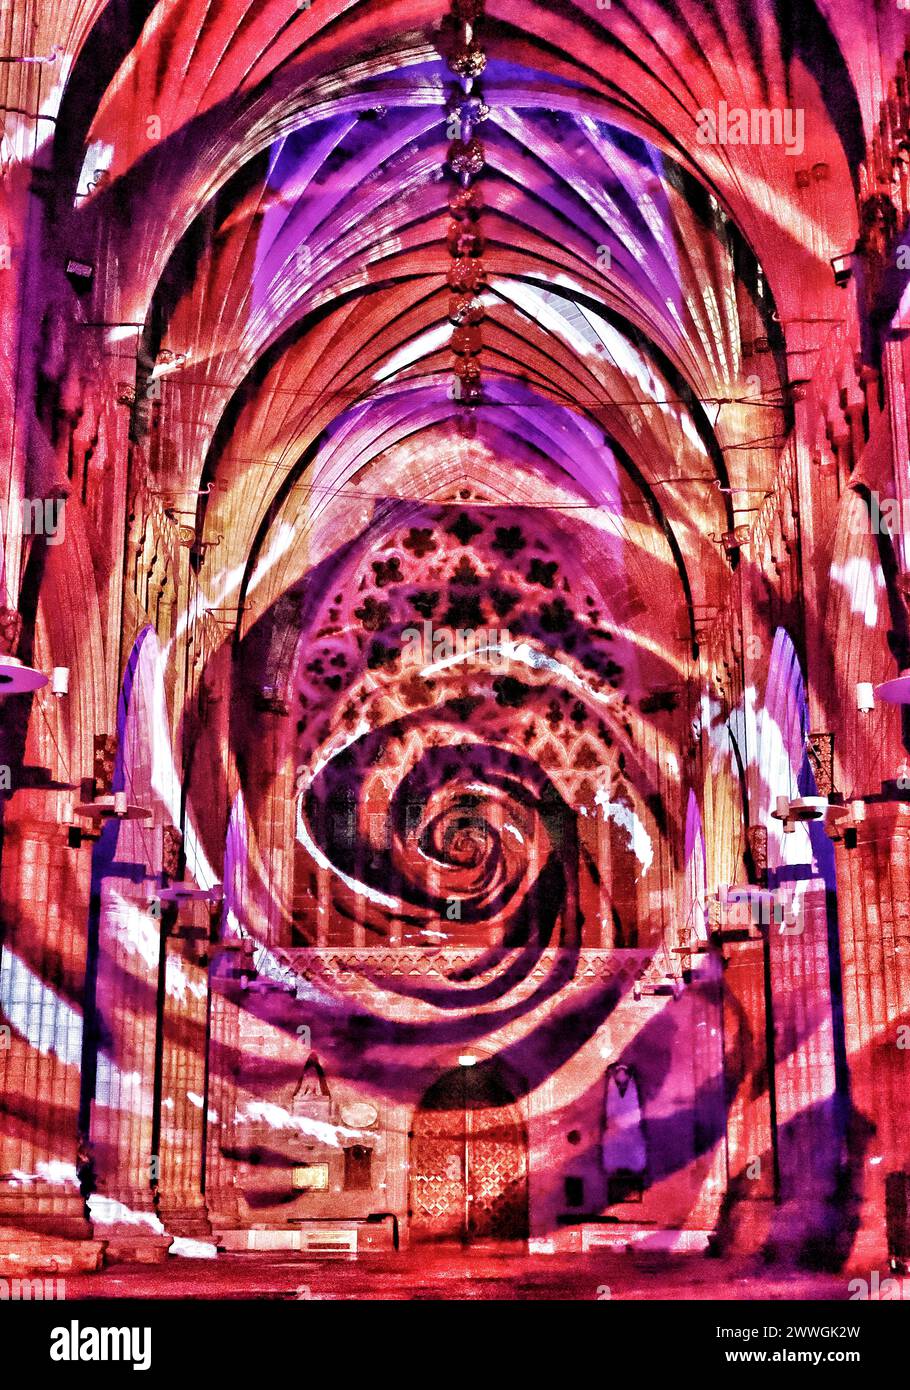 Exeter, Devon, Großbritannien. Januar 2024. Atemberaubende Sound- und Lichtshow, die das Spektakel der Kronjuwelen und Krönungen in der Kathedrale von Exeter zum Leben erweckt. Dienstag, 9. – Samstag, 13. Januar 2024 nach der Eröffnung im Tower of London ist die Kathedrale von Exeter der erste Veranstaltungsort für diese spektakuläre neue Sound- und Lichtshow, die von den Kronjuwelen und ihrer Rolle bei der Krönungszeremonie inspiriert ist. Hinweis: Nidpor/Alamy Live News Stockfoto